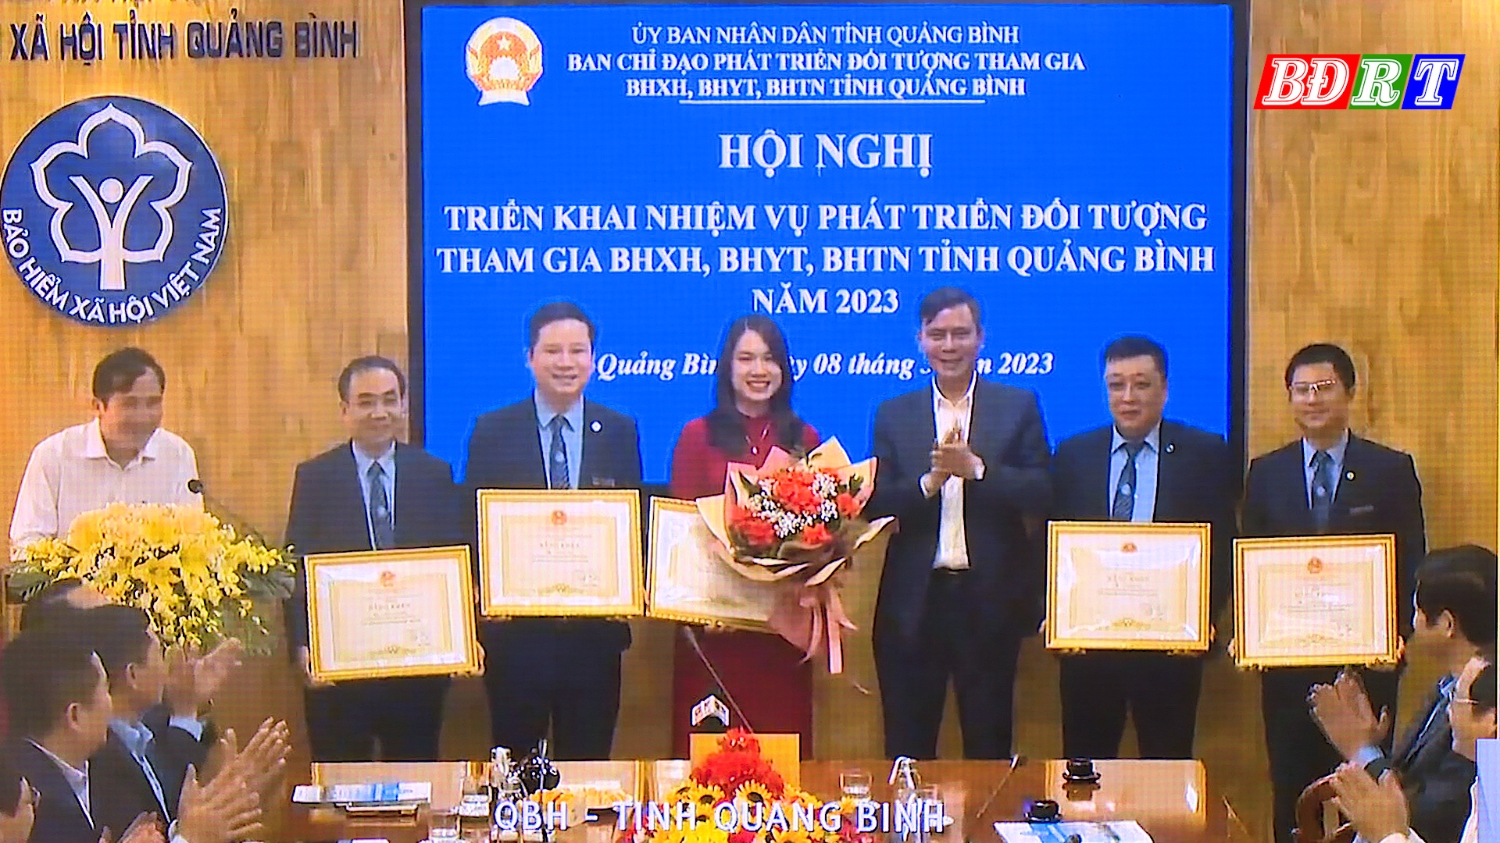 đồng chí Chủ tịch UBND tỉnh Trần Thắng đã tặng bằng khen cho 5 cá nhân thuộc BHXH tỉnh vì đã có thành tích xuất sắc trong công tác năm 2022